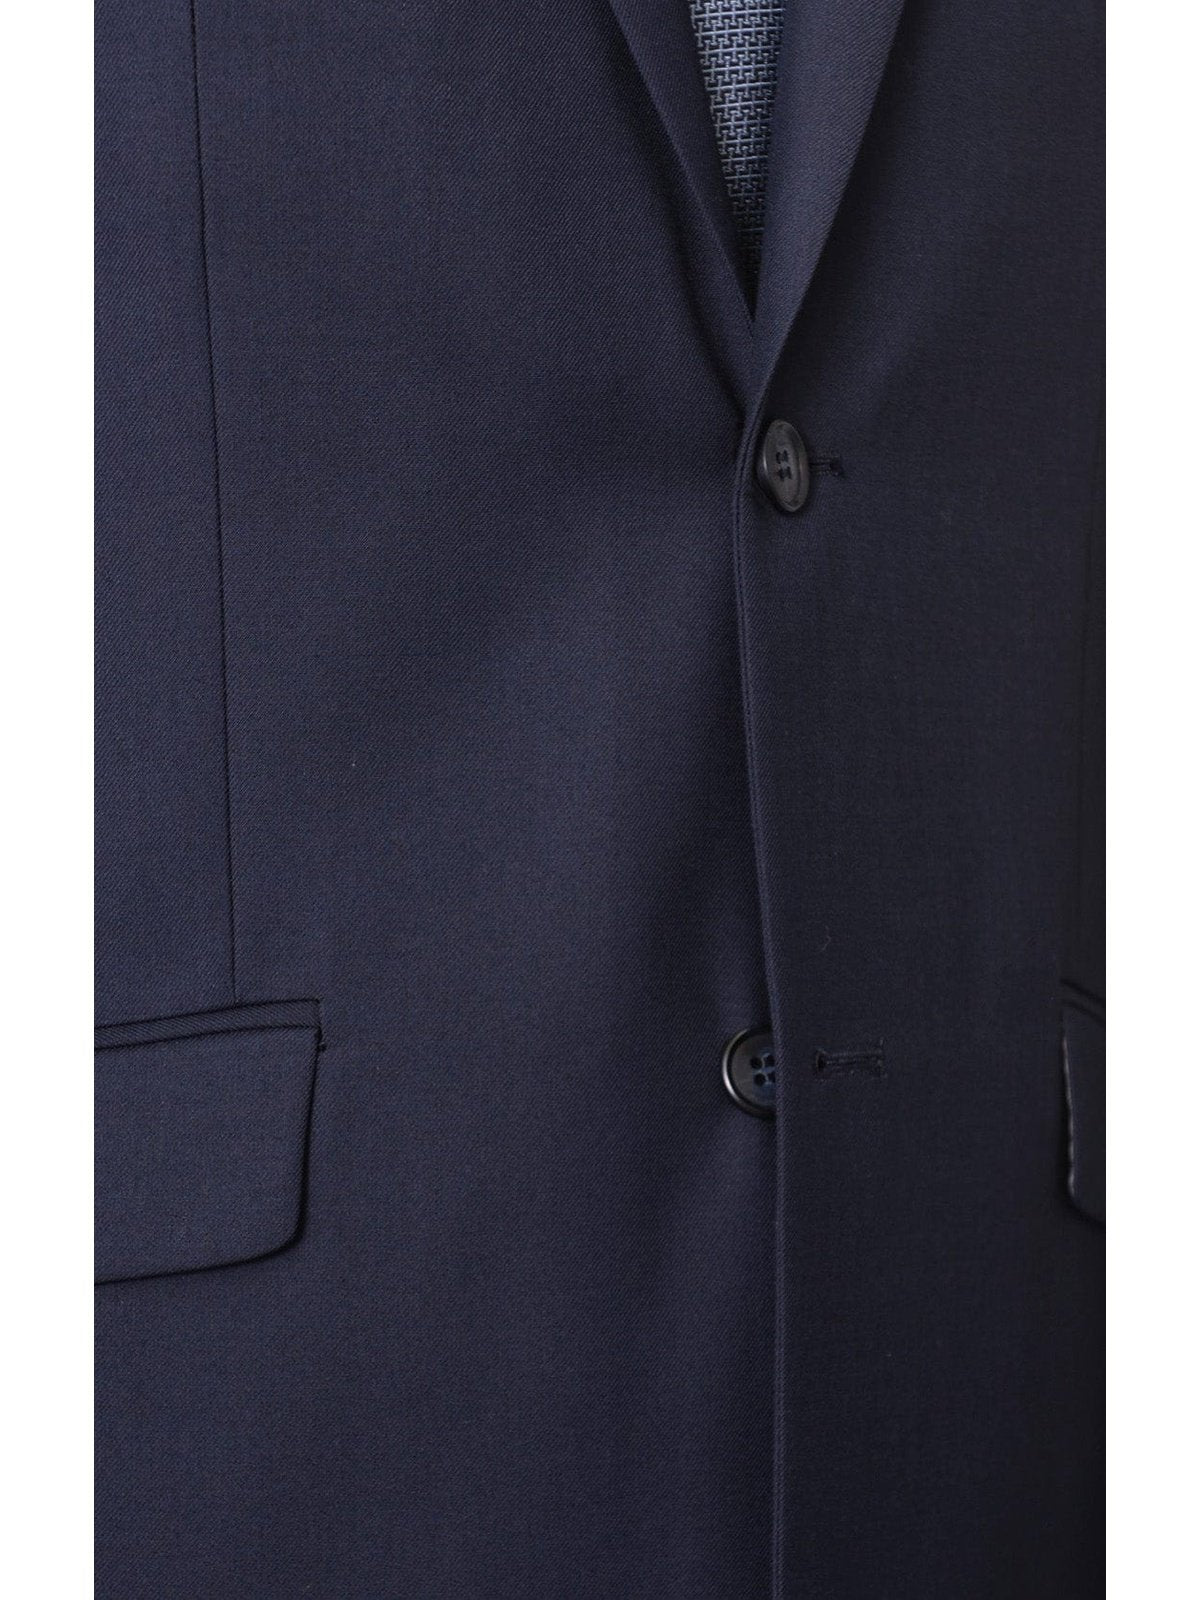 Raphael SUITS Men's Raphael Regular Fit Solid Blue Two Button 2 Piece Suit Jacket & Pants